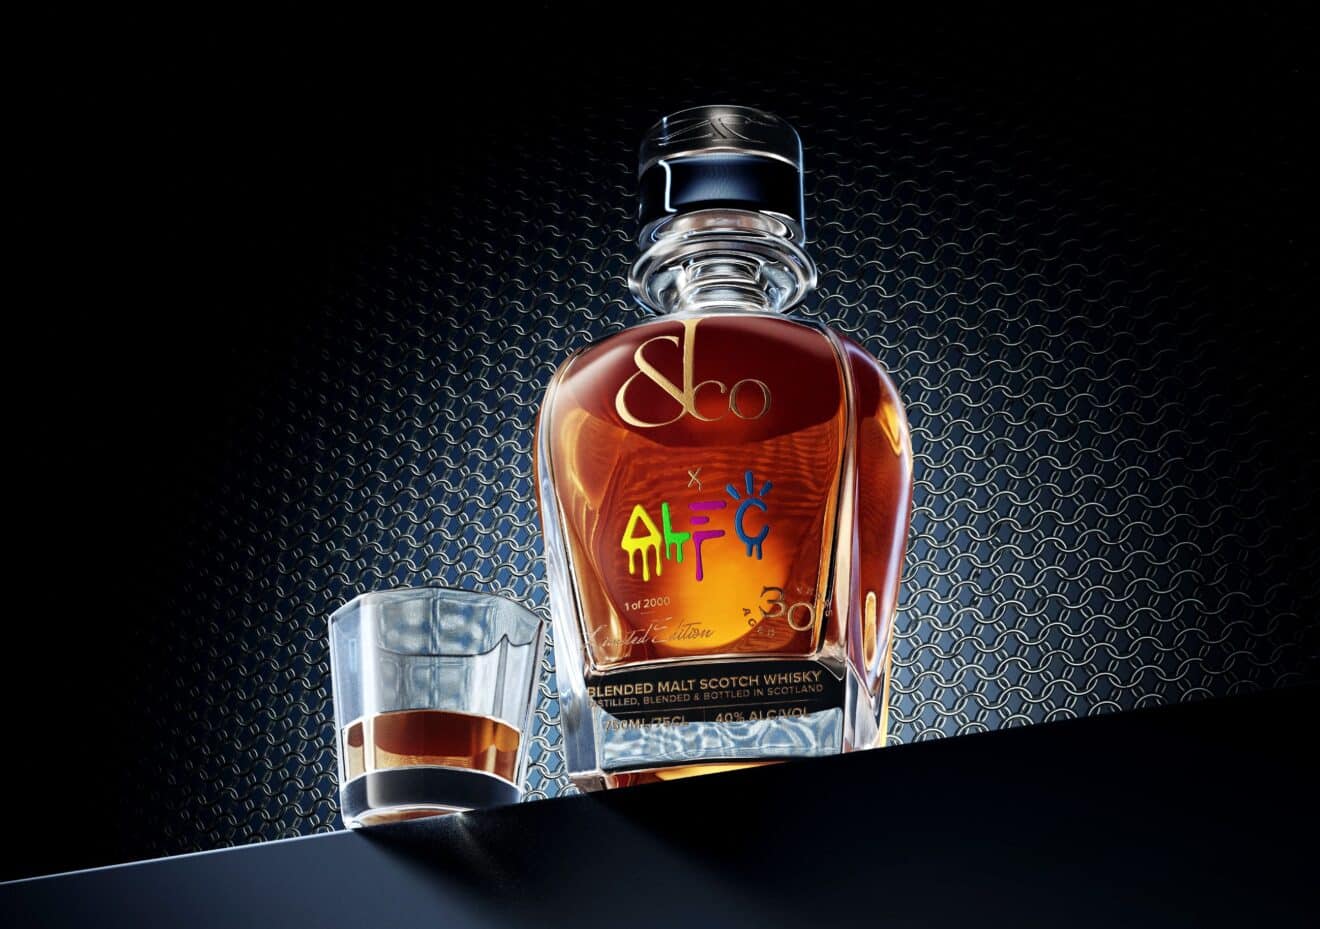 Jacob & Co crée son premier spiritueux : ce whisky, c'est de l'or